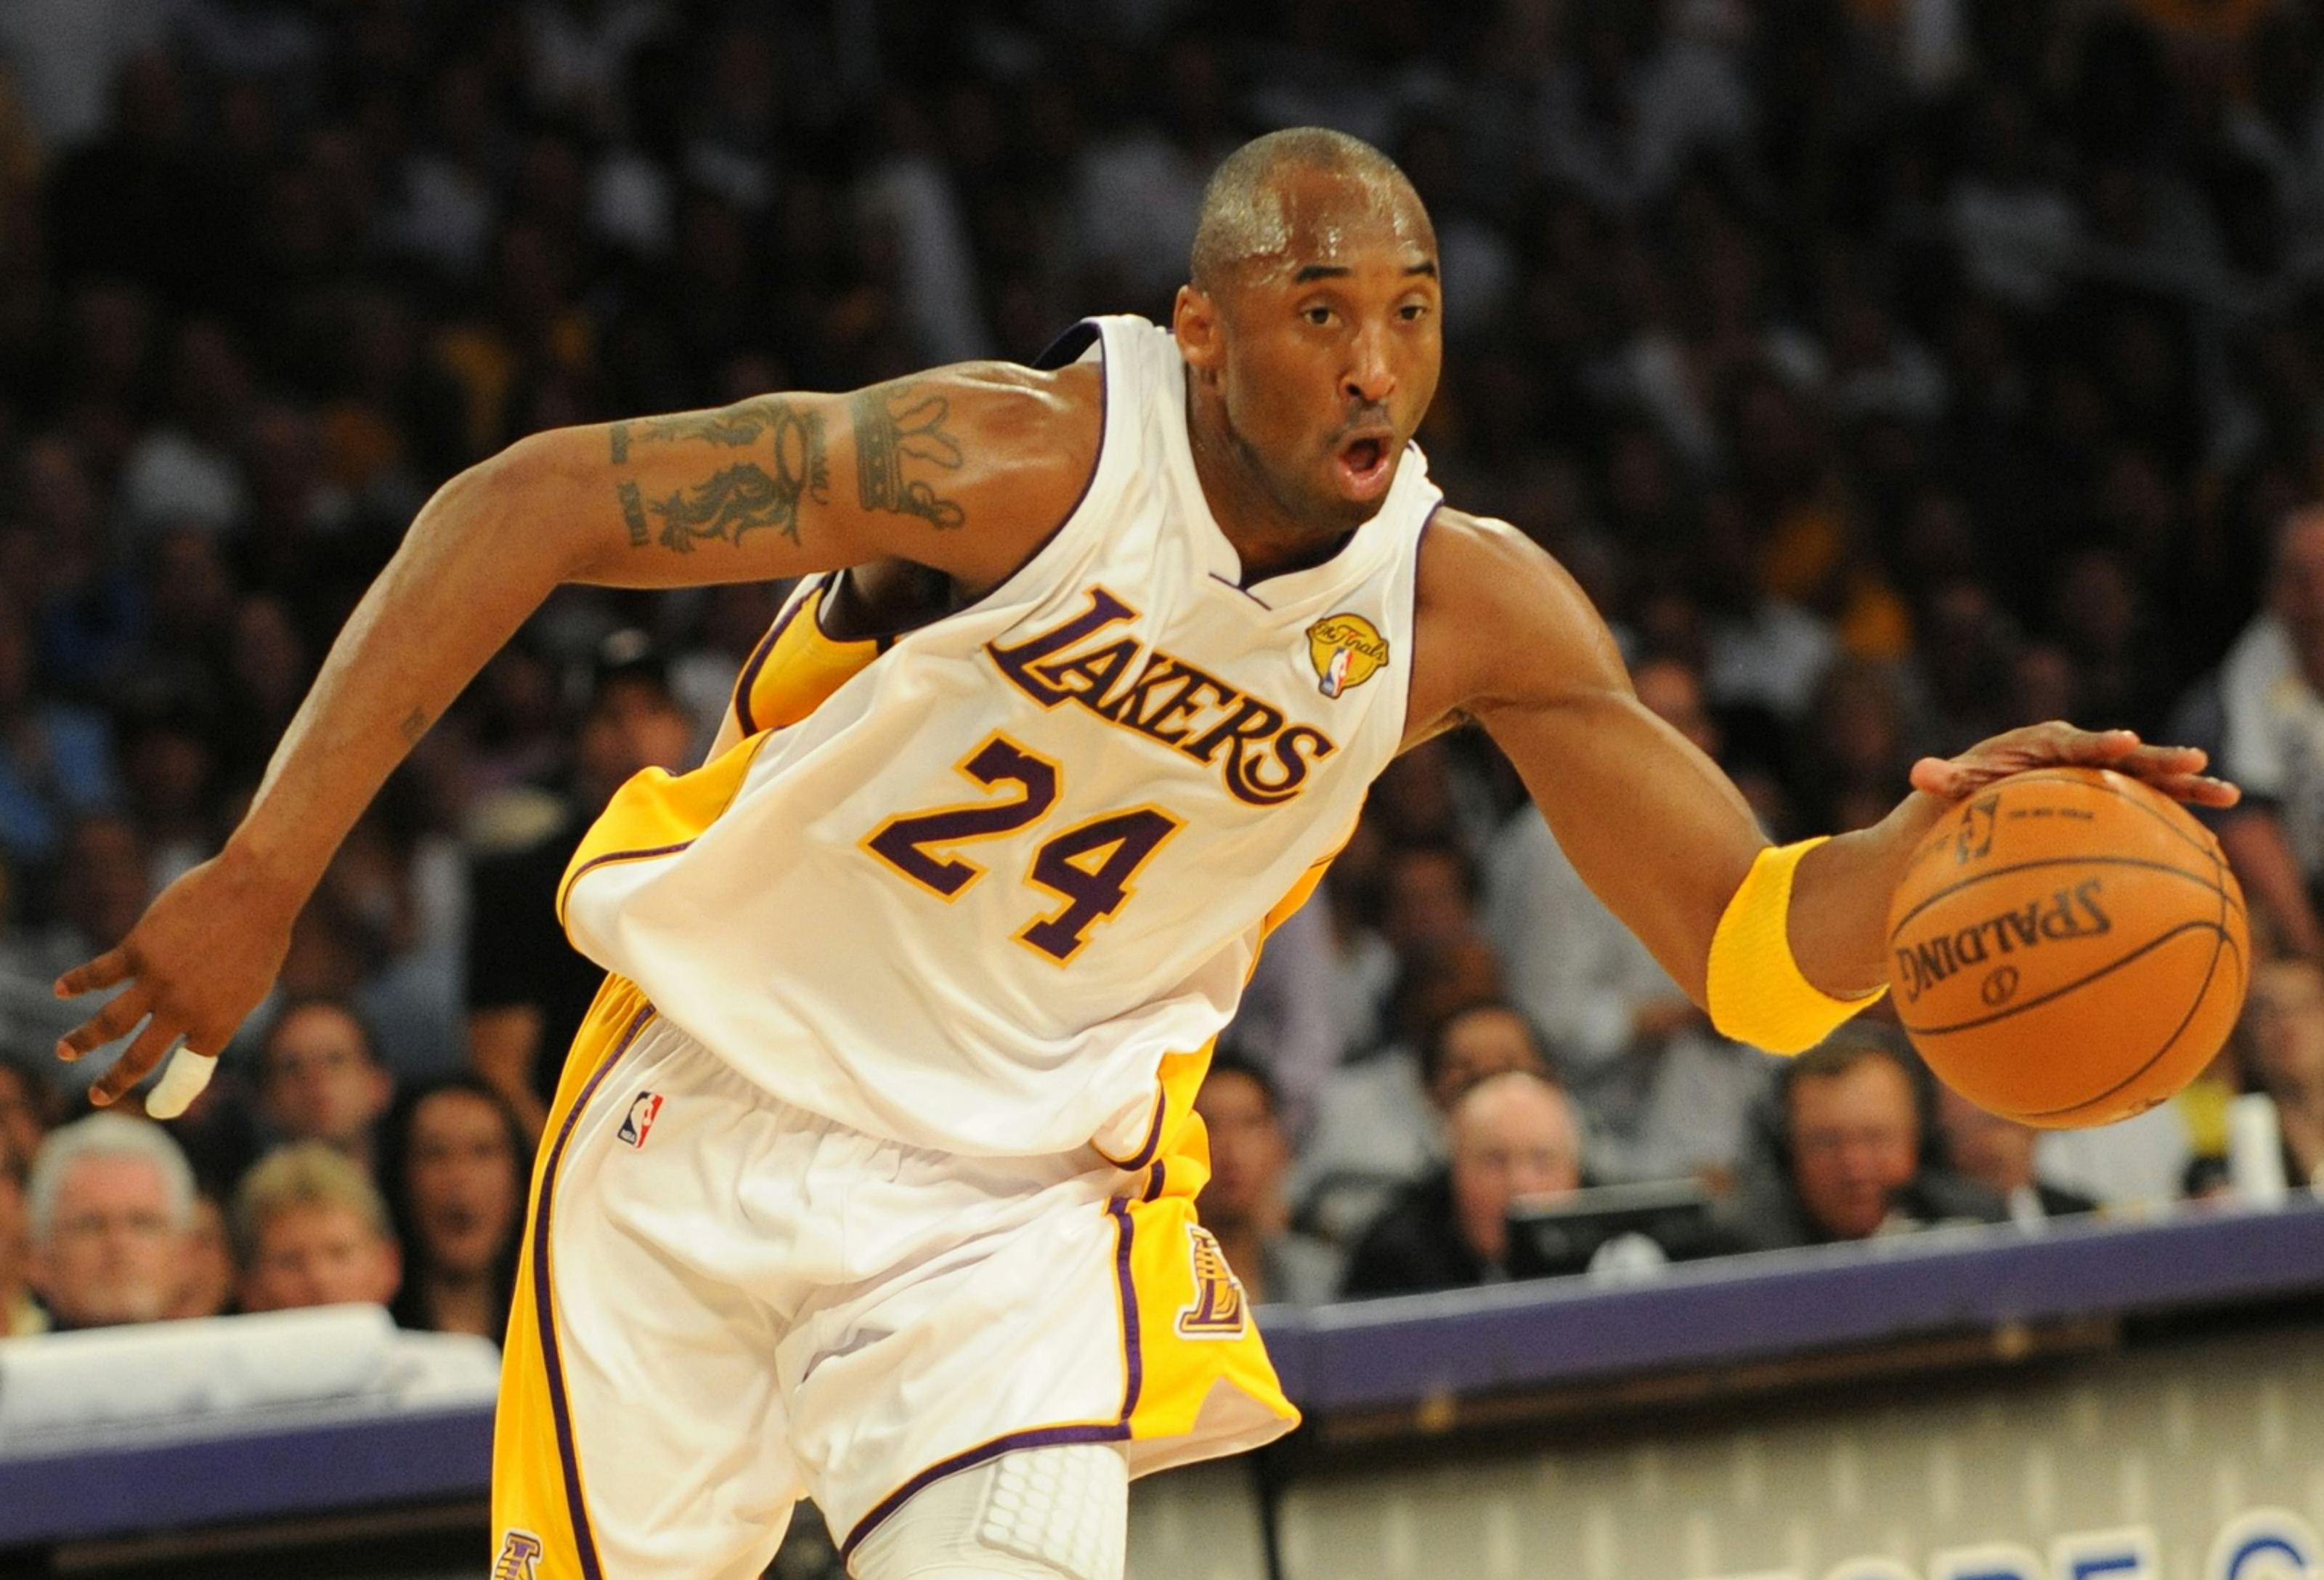 LA Lakers Chick Hearn Sleeveless Jersey Nepal